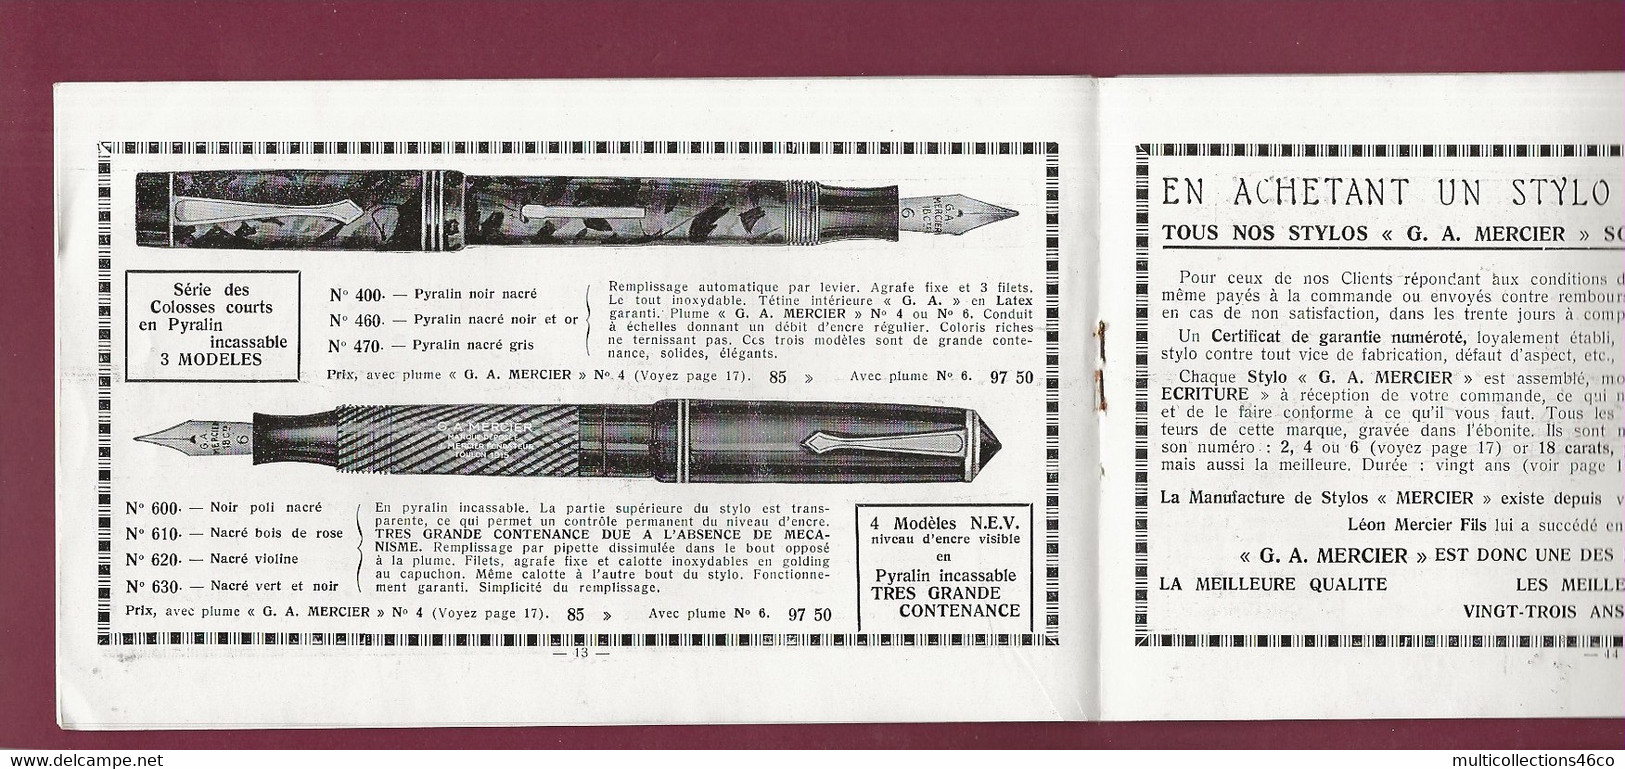 160121A - 1938 Catalogue Commercial STYLO L MERCIER à TOULON - Papeterie Plume - Imprimerie & Papeterie